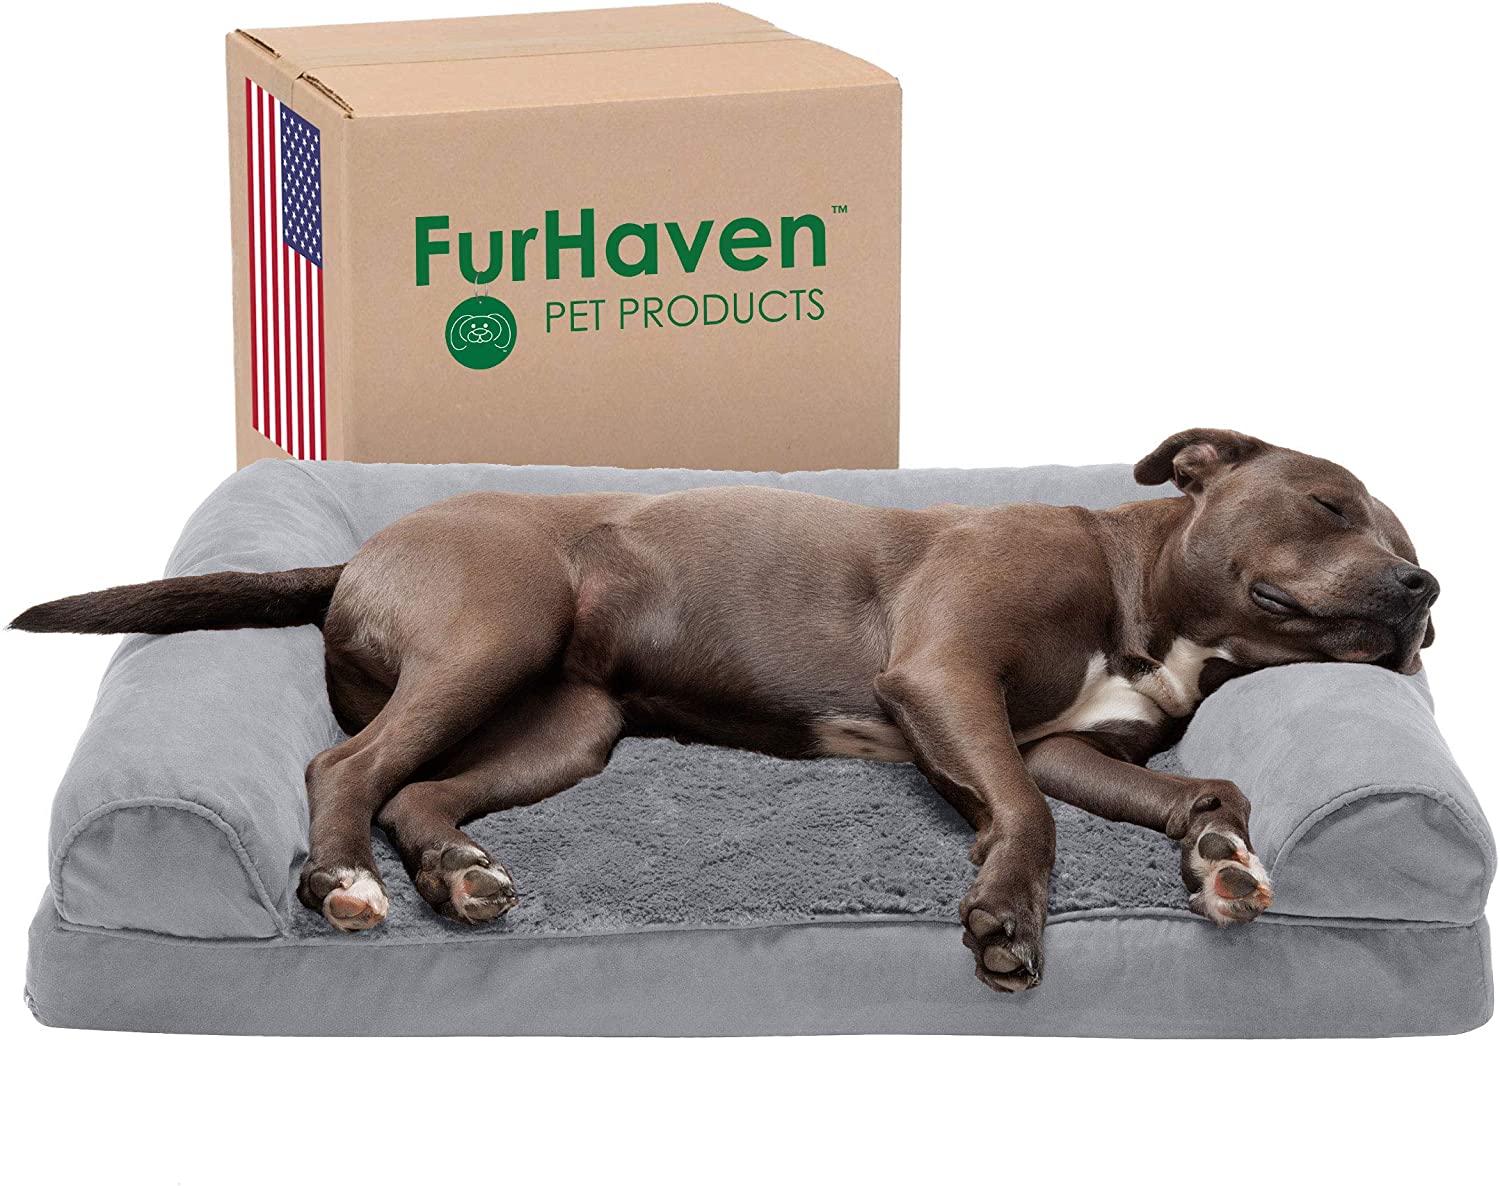 Furhaven dog sofa bed